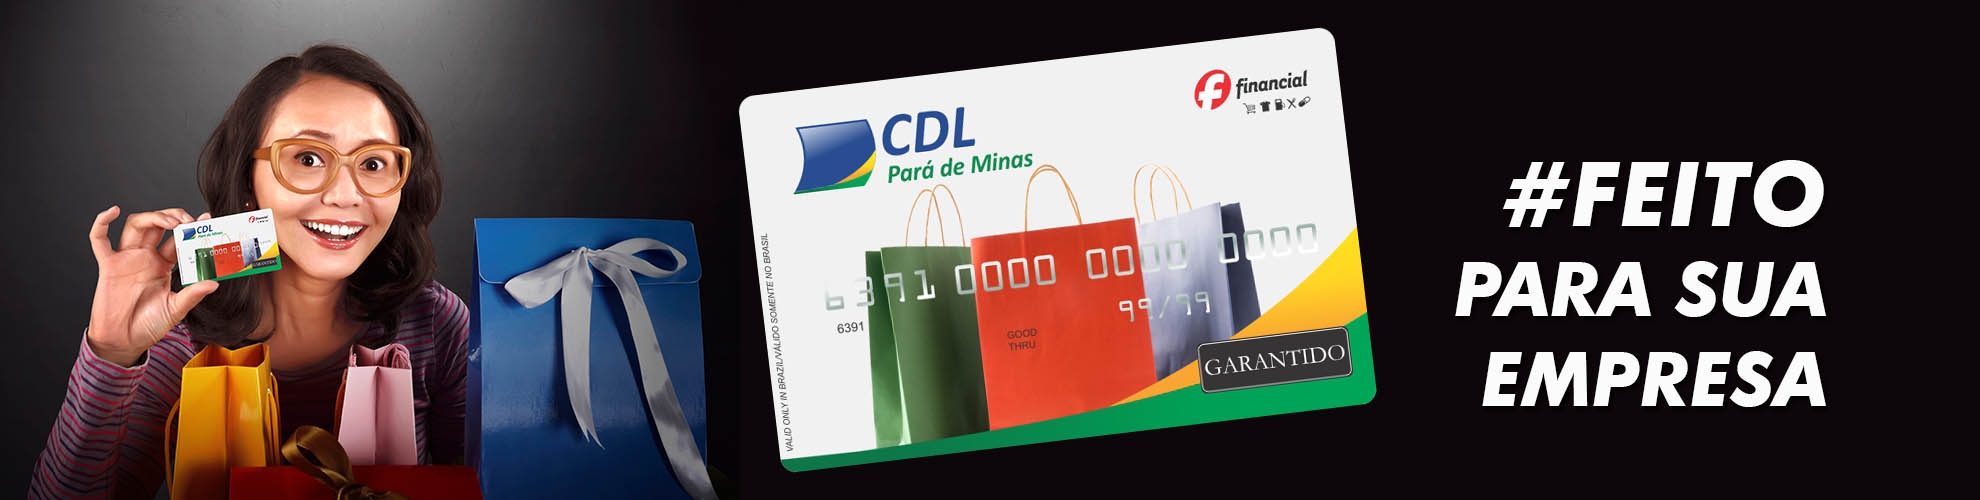 Cartão Desconto em Folha CDL Pará de Minas